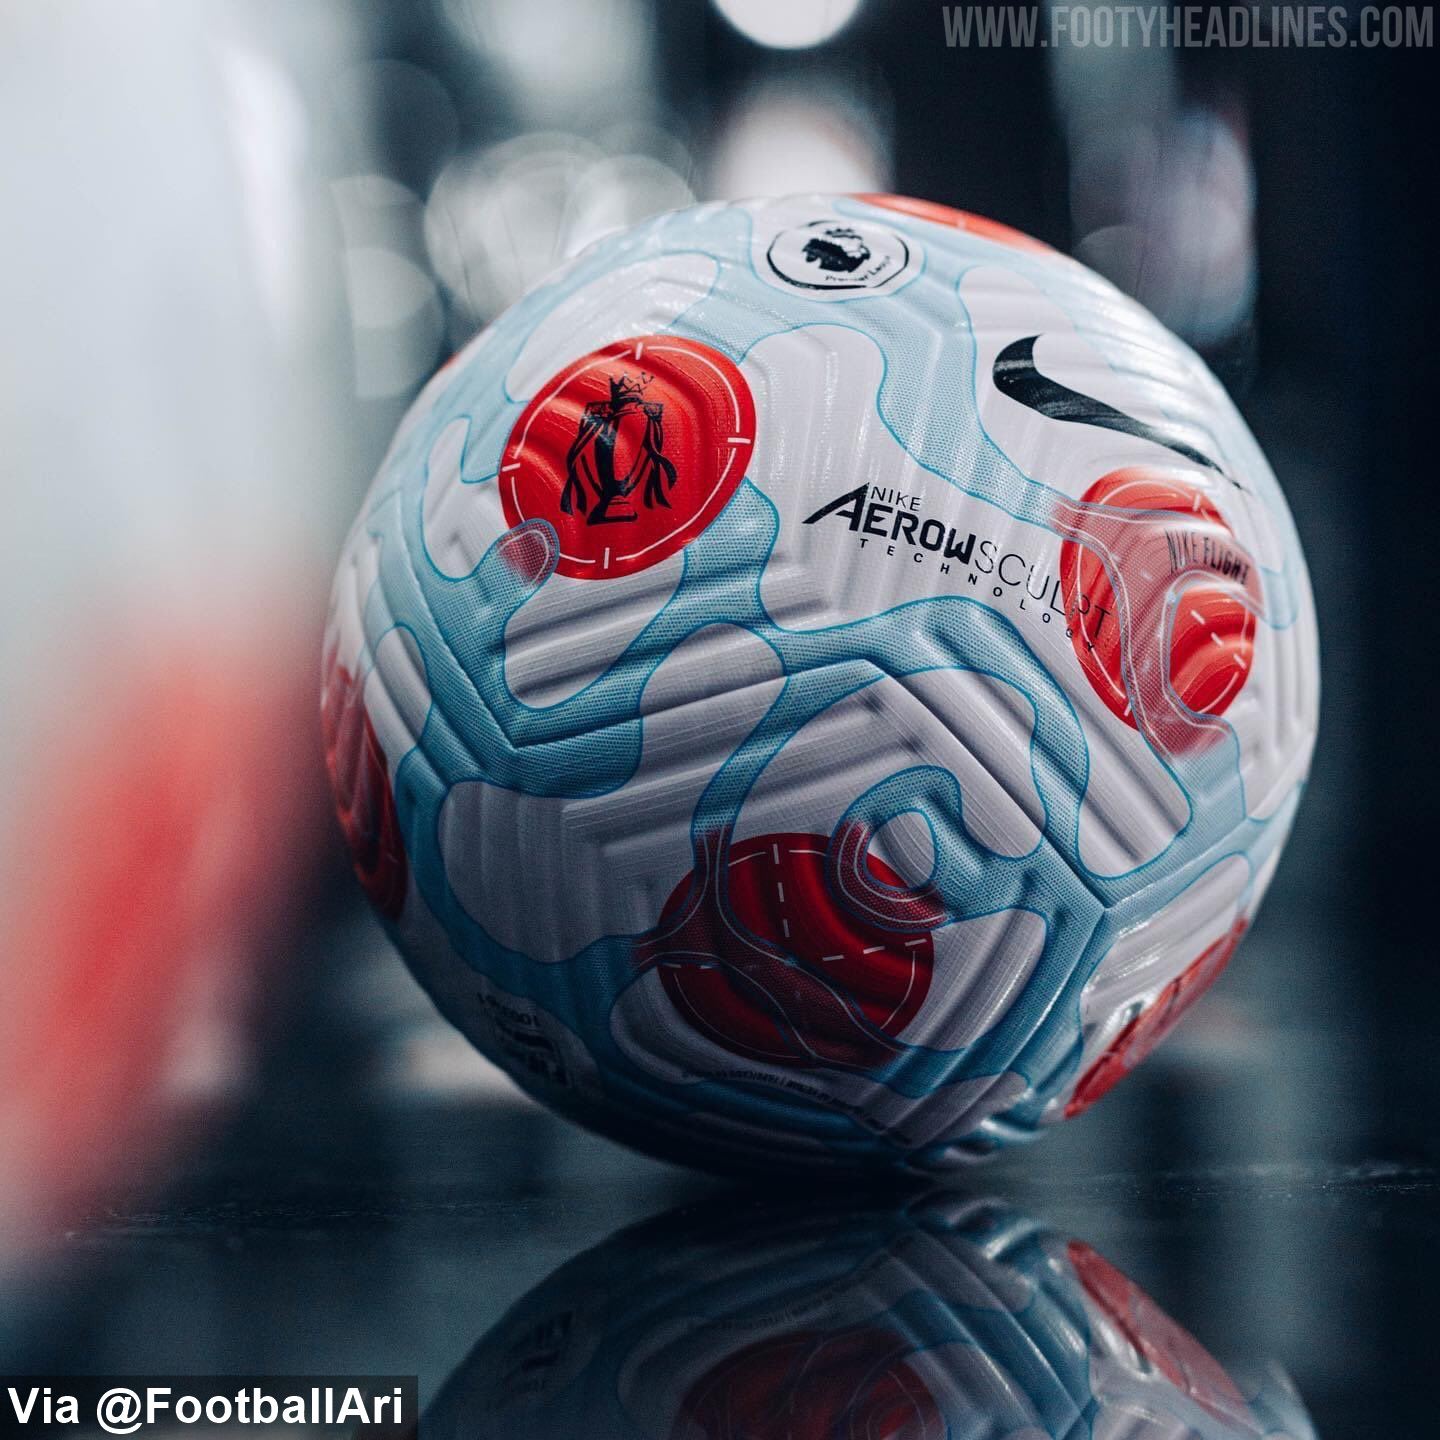 Nike présente le troisième ballon de la Premier League 21/22